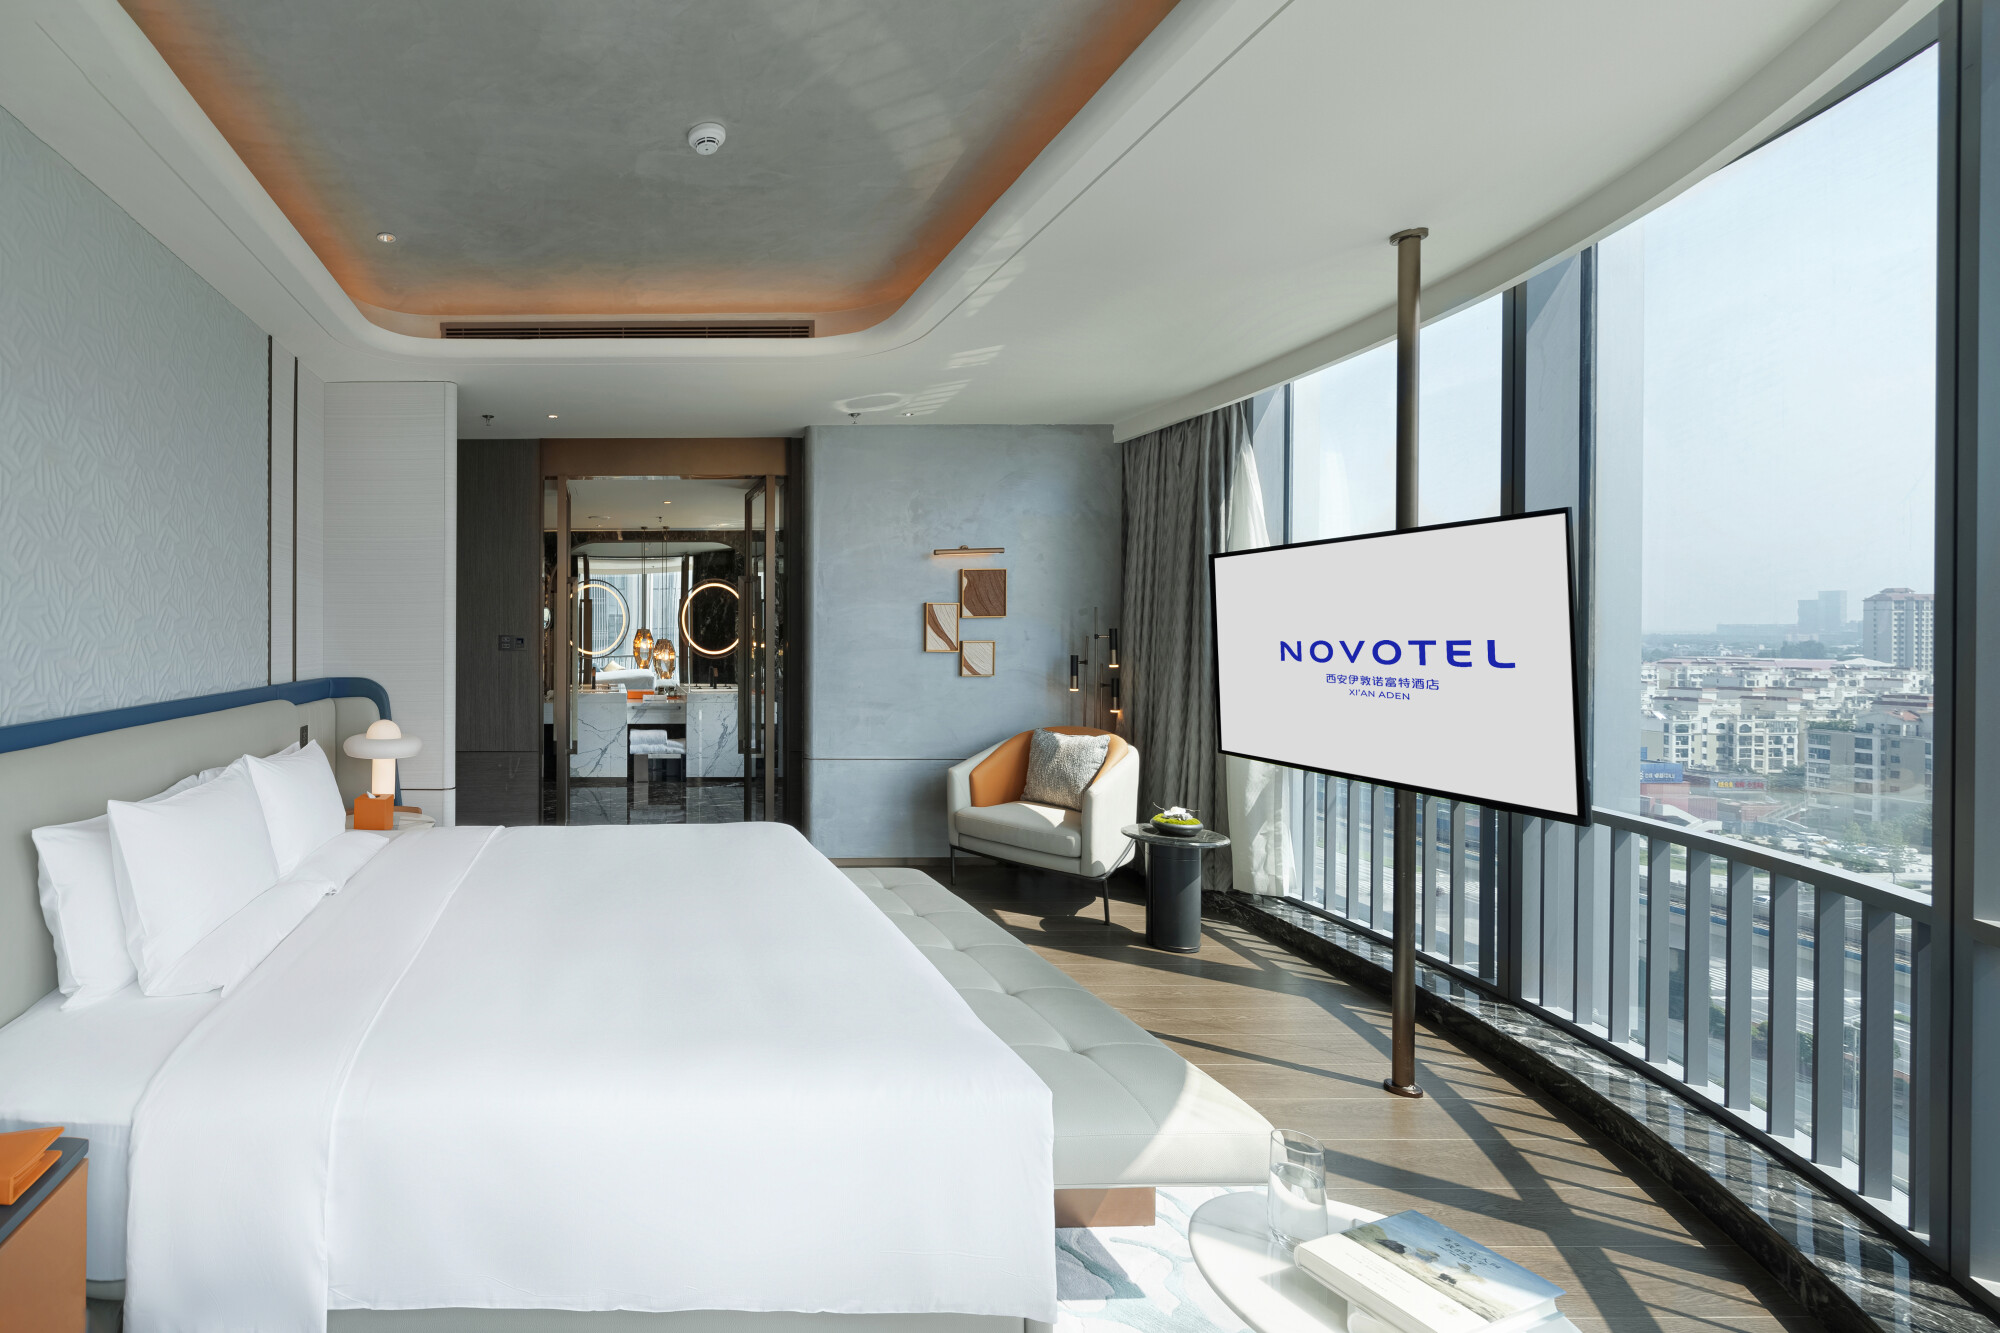 西安伊敦诺富特酒店Novotel Xi'an Aden - 总套卧室 Presidential Suite-jpg